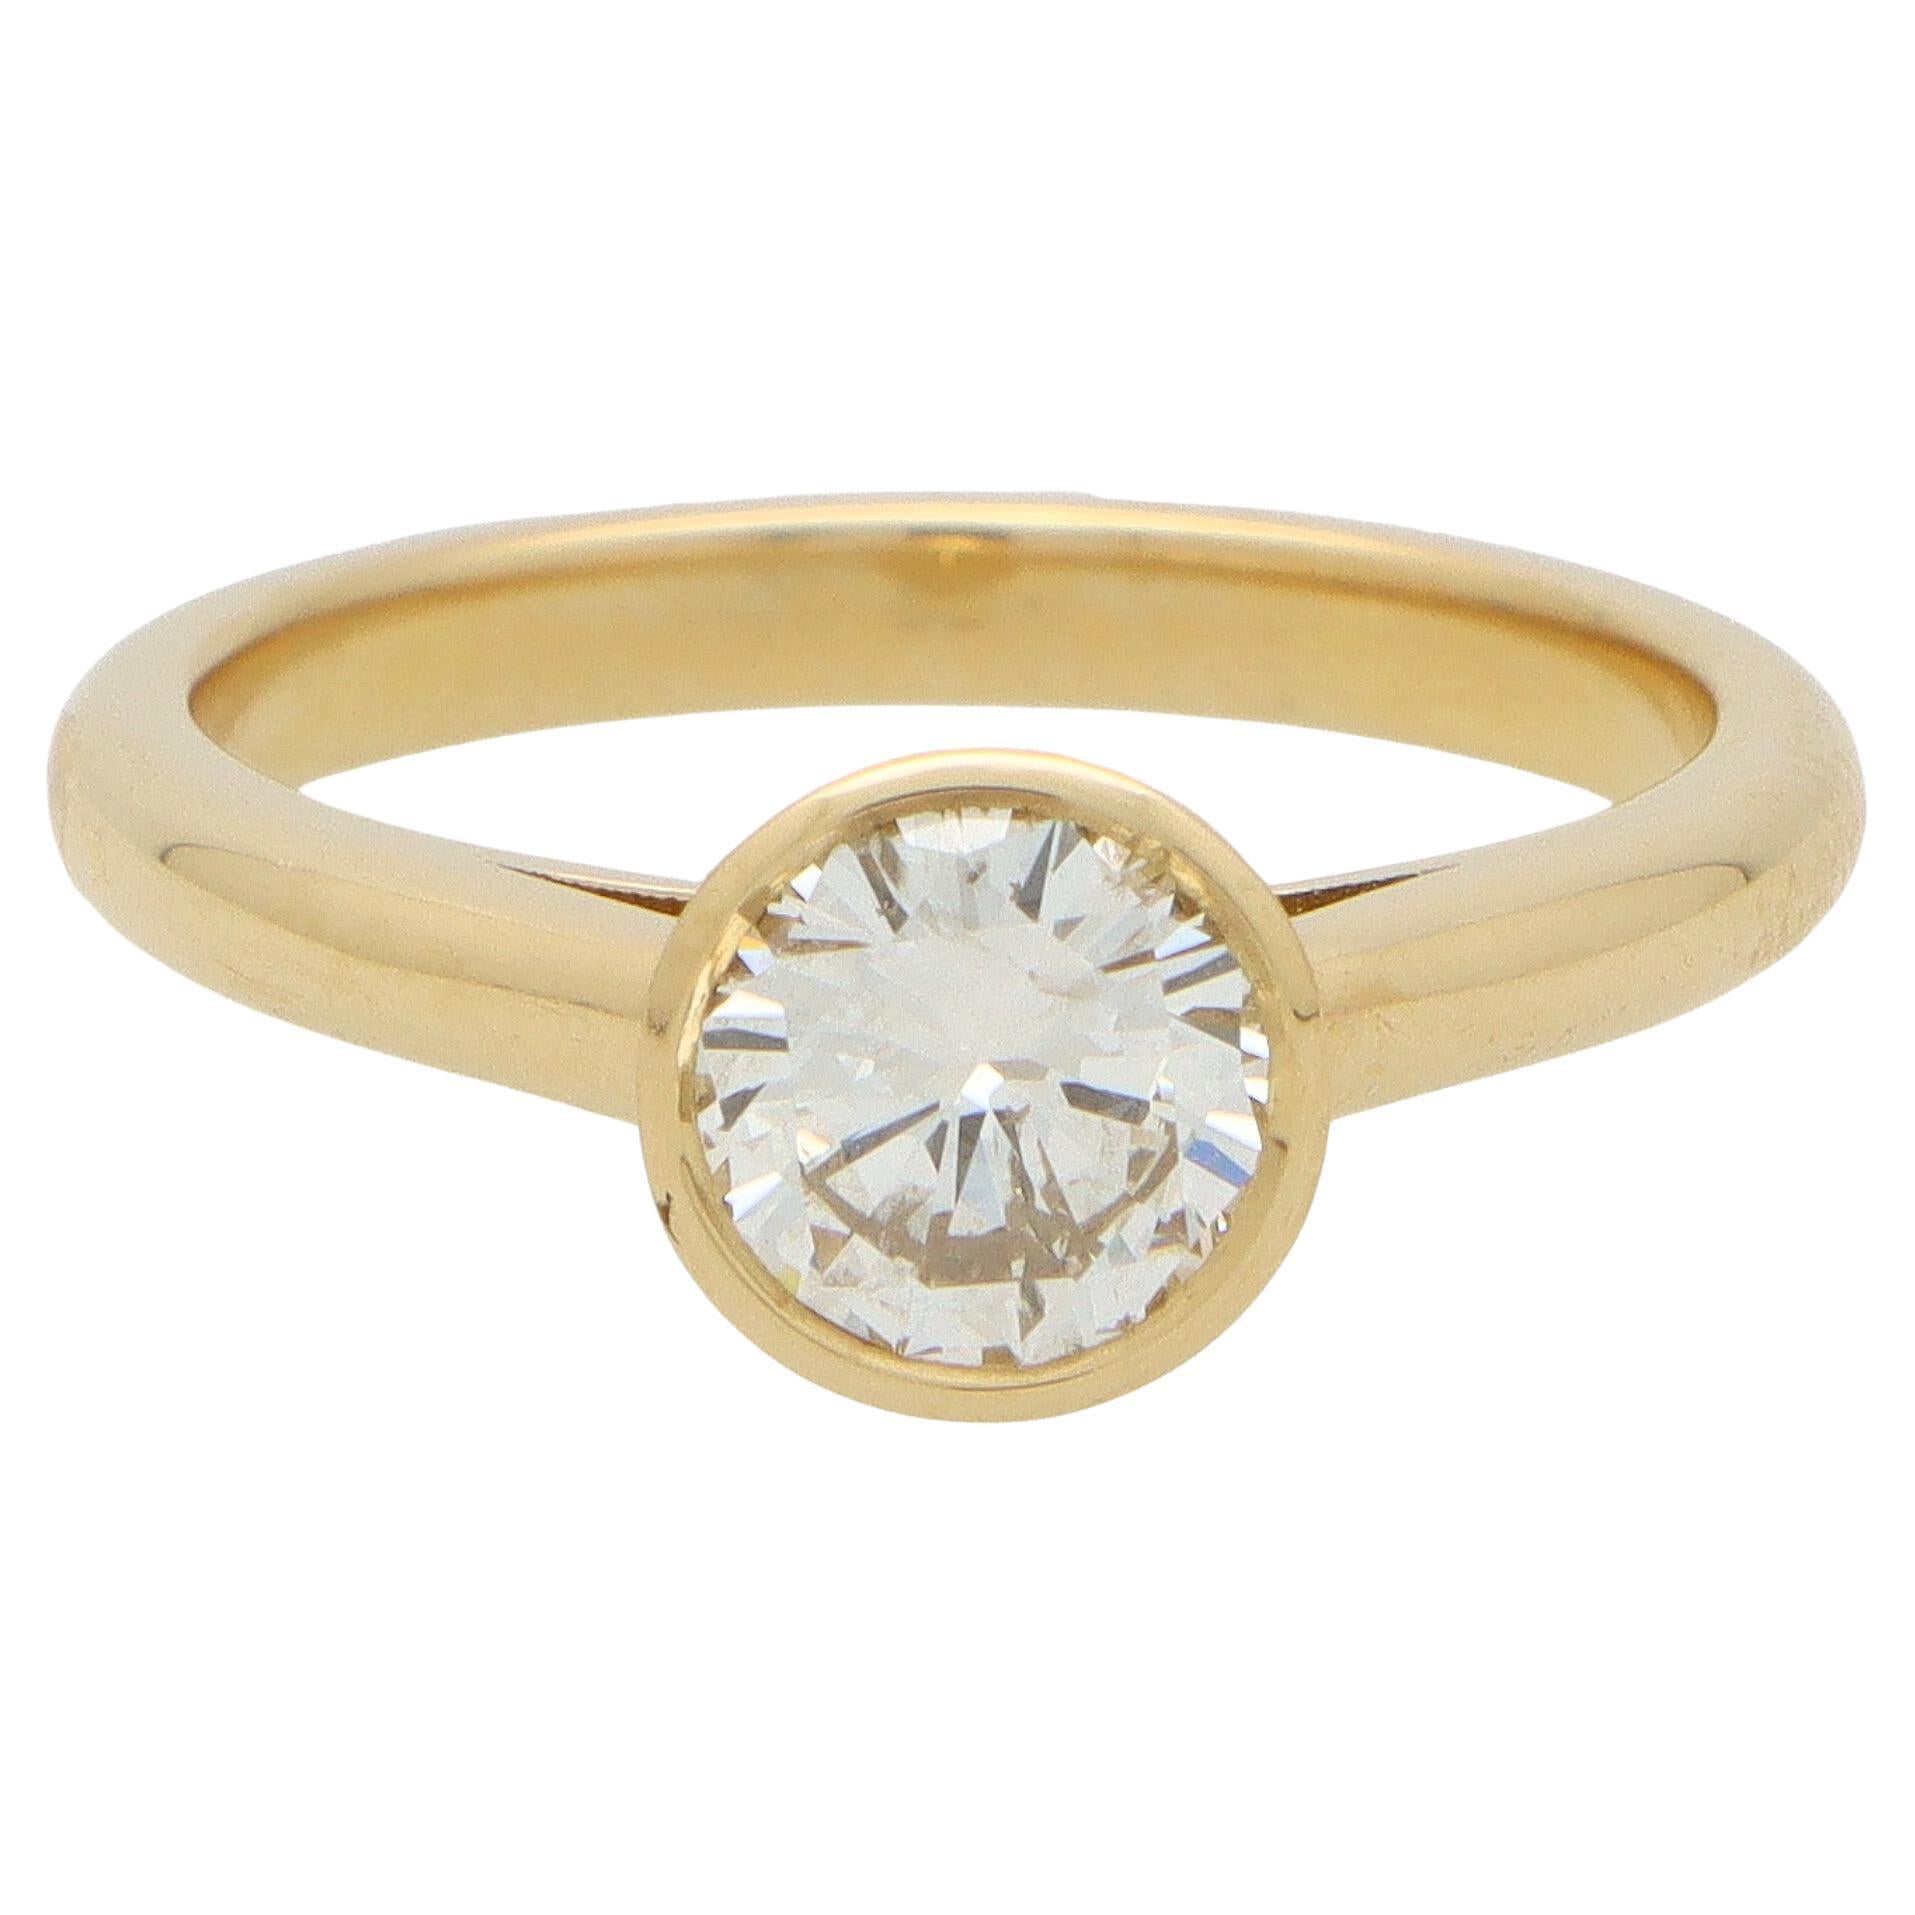 Certified Bezel Set Single Solitaire Diamond Engagement Ring in 18k Yellow Gold (Bague de fiançailles en or jaune avec chaton)